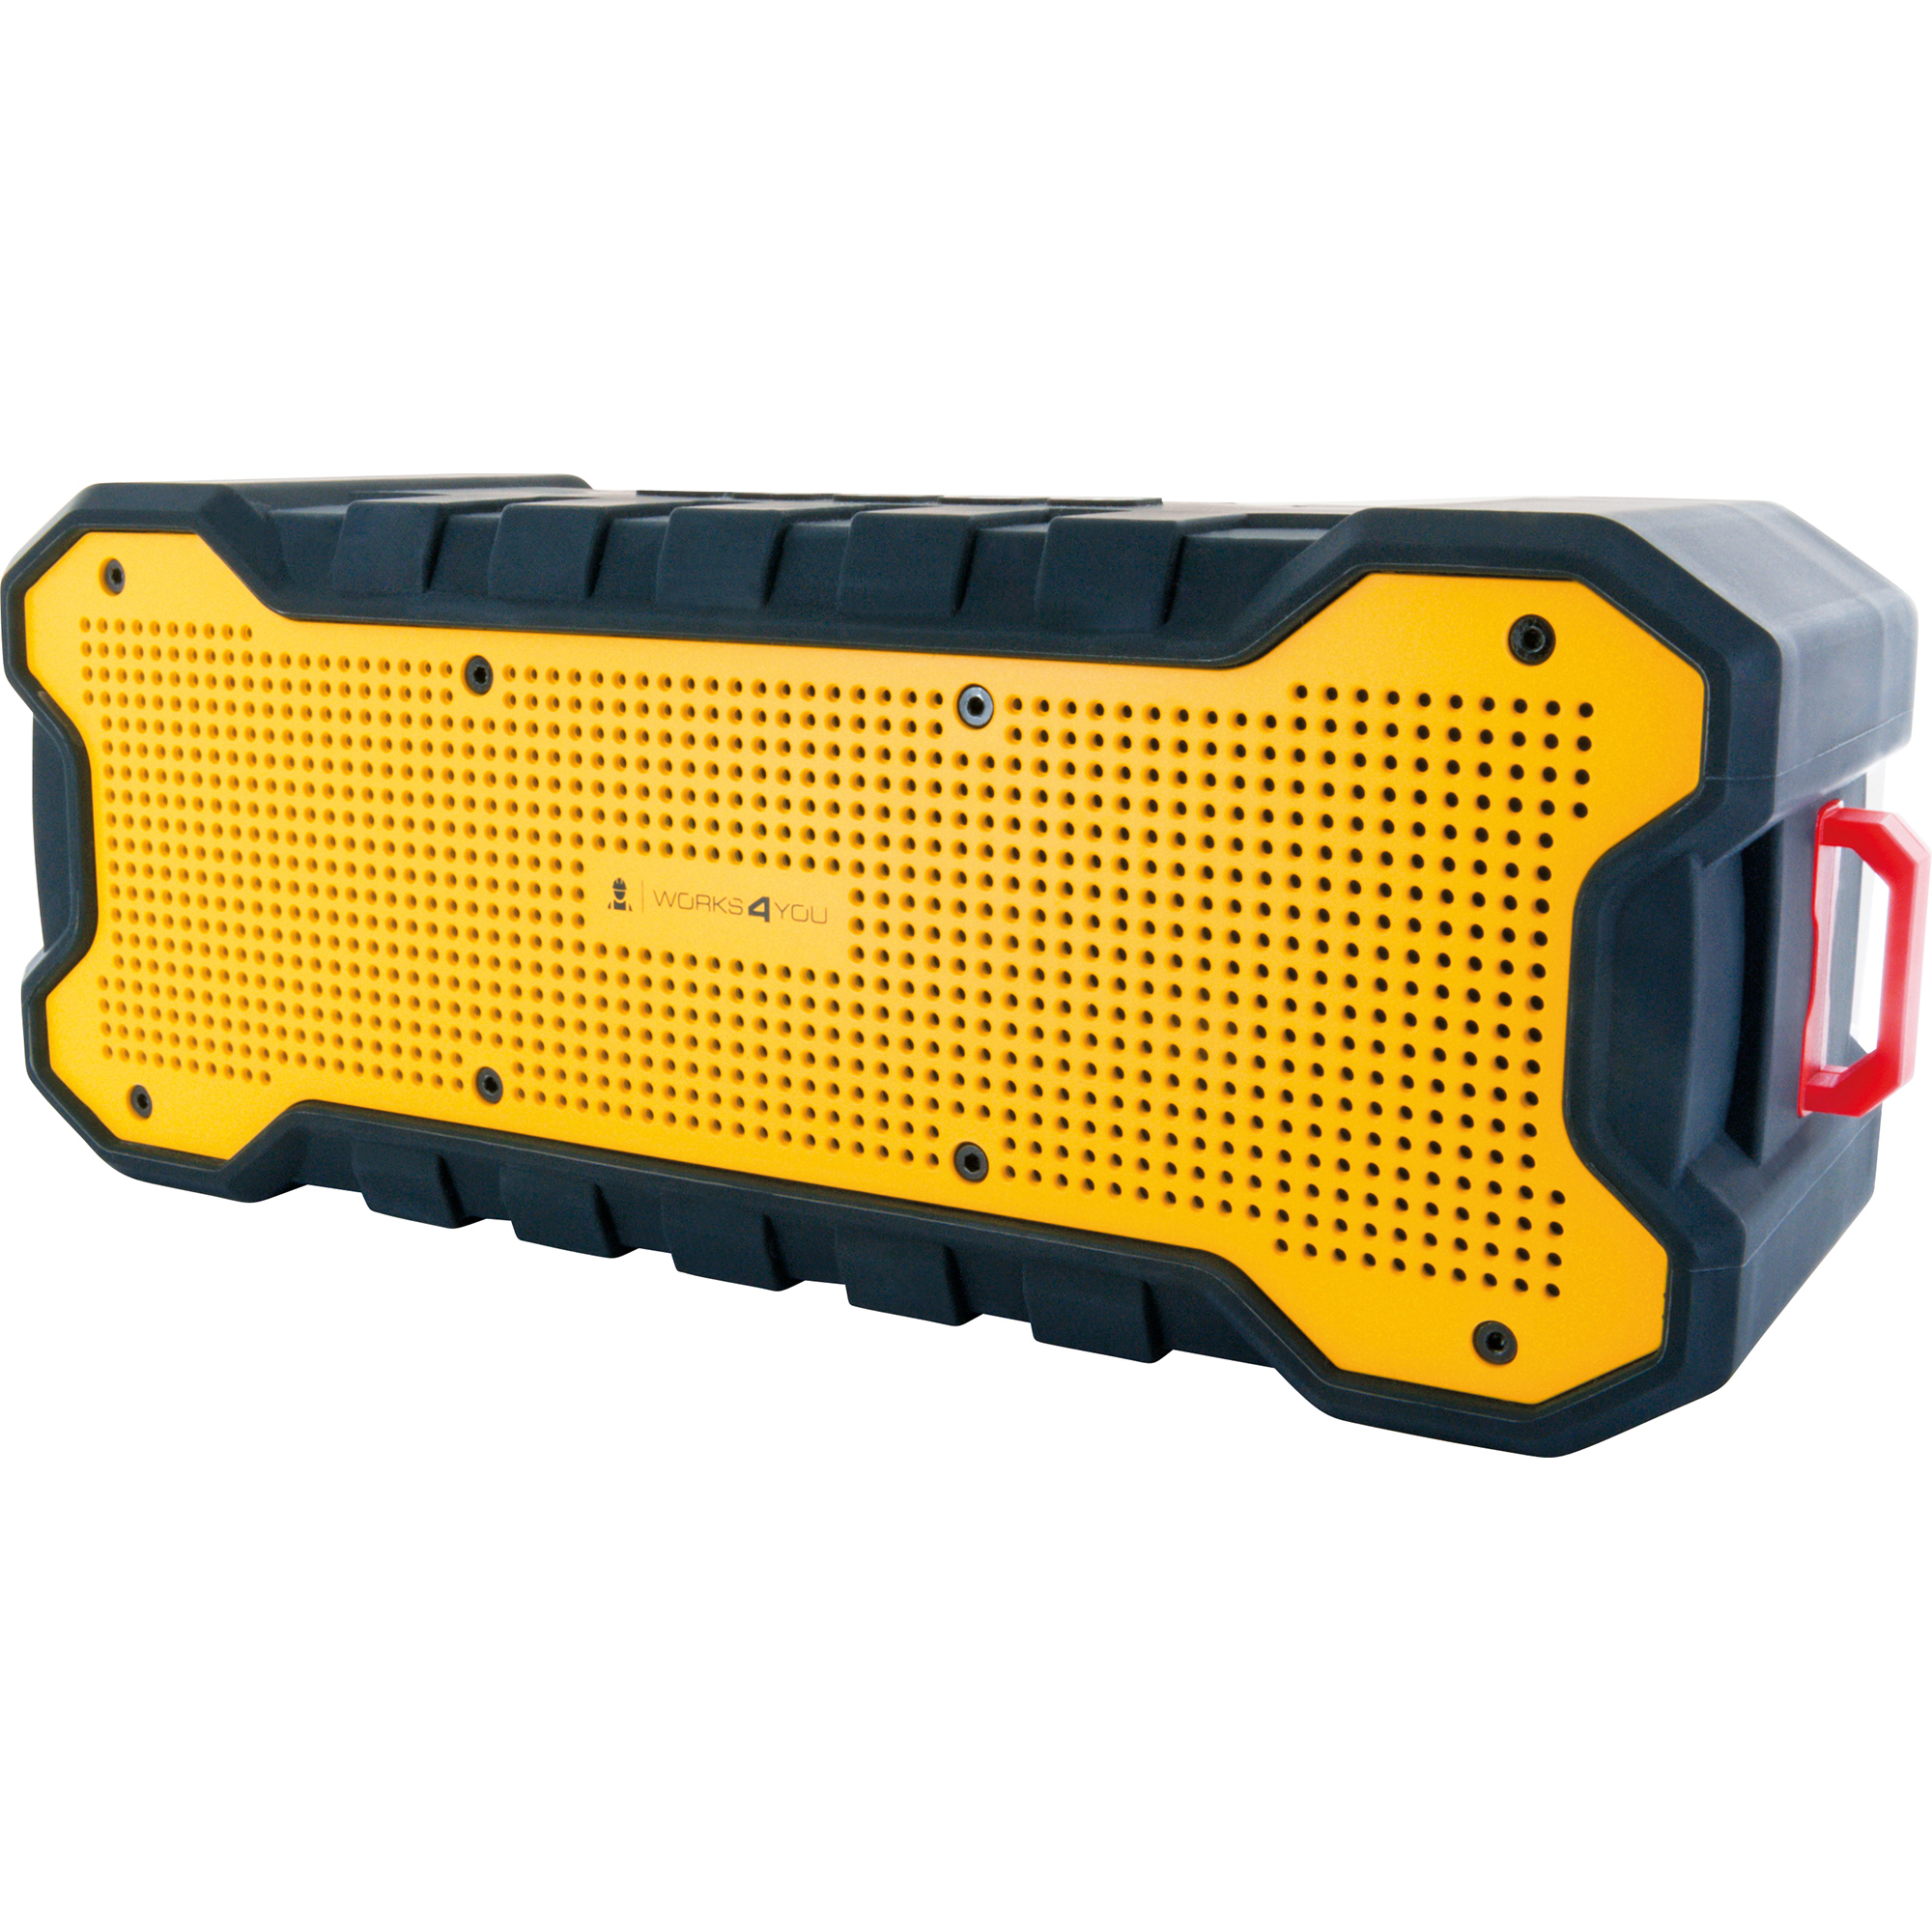 Bluetooth Stereo-Lautsprecher gelb/schwarz 2 x 6 W + product picture